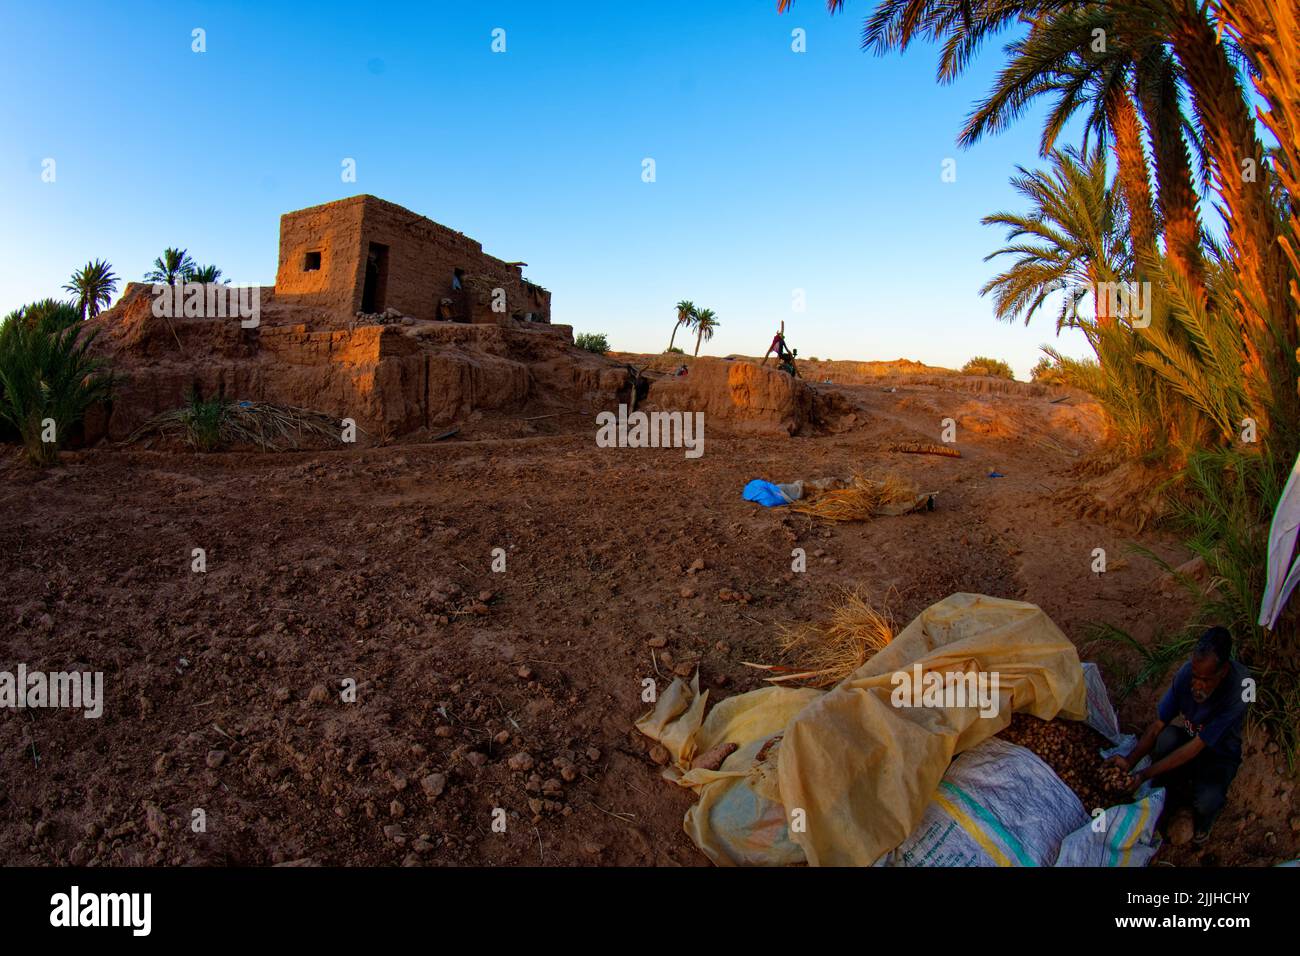 Casa tradicional en el desierto marroquí. Edificio de arcilla marrón roja de bereberes con palmeras a la derecha, cielo azul y tierra marrón naranja. Li Foto de stock